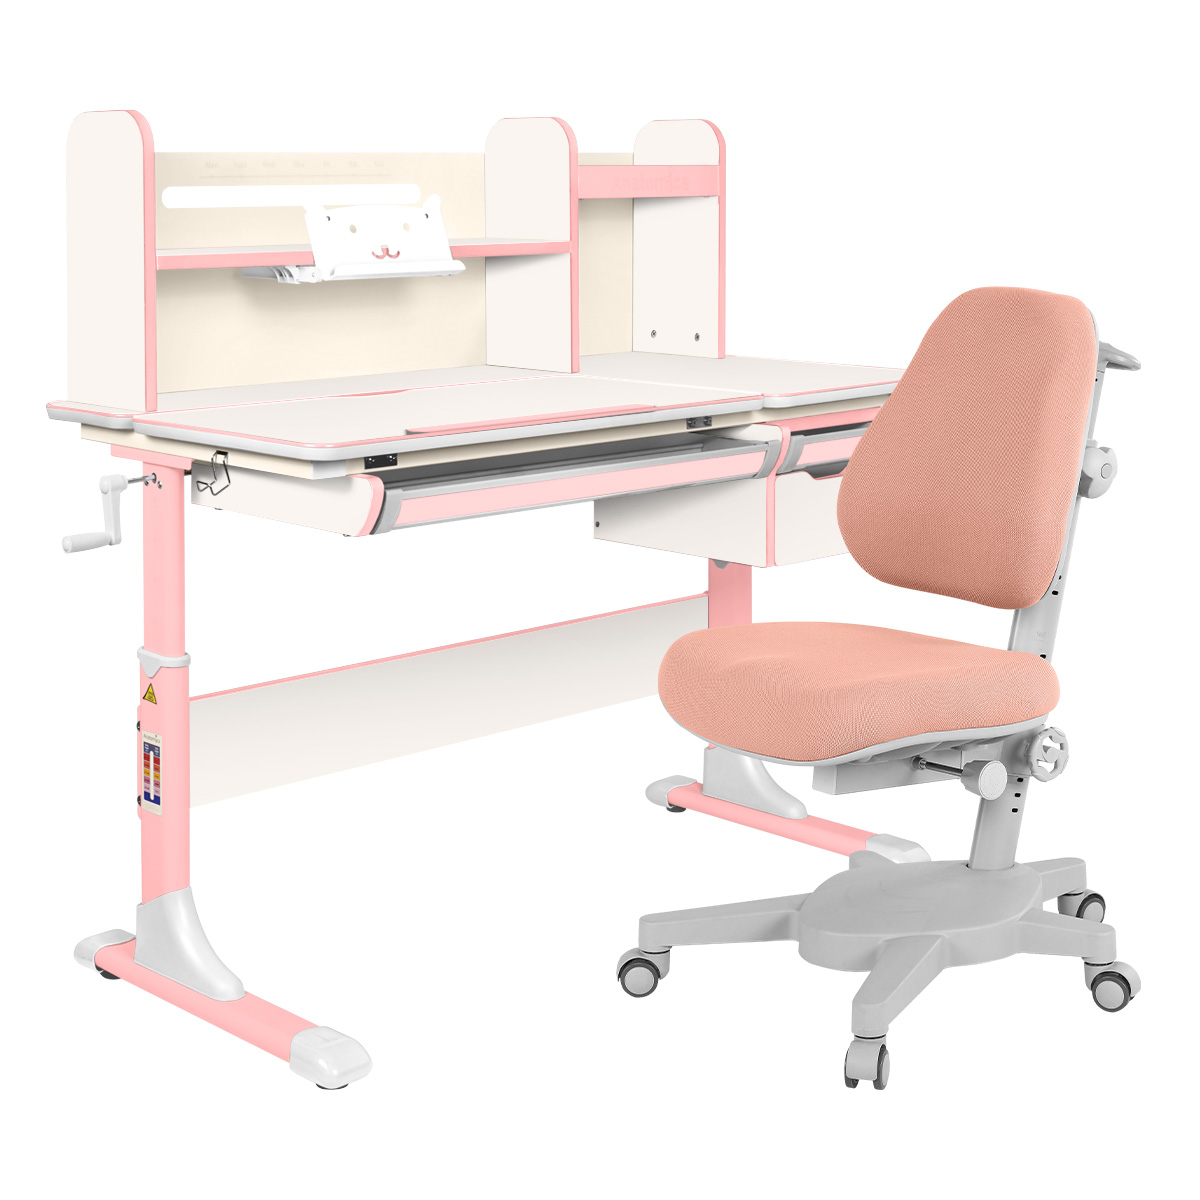 Комплект Anatomica парта Genius белый/розовый со светло-розовым креслом Armata комплект anatomica парта genius белый розовый с розовым креслом figra